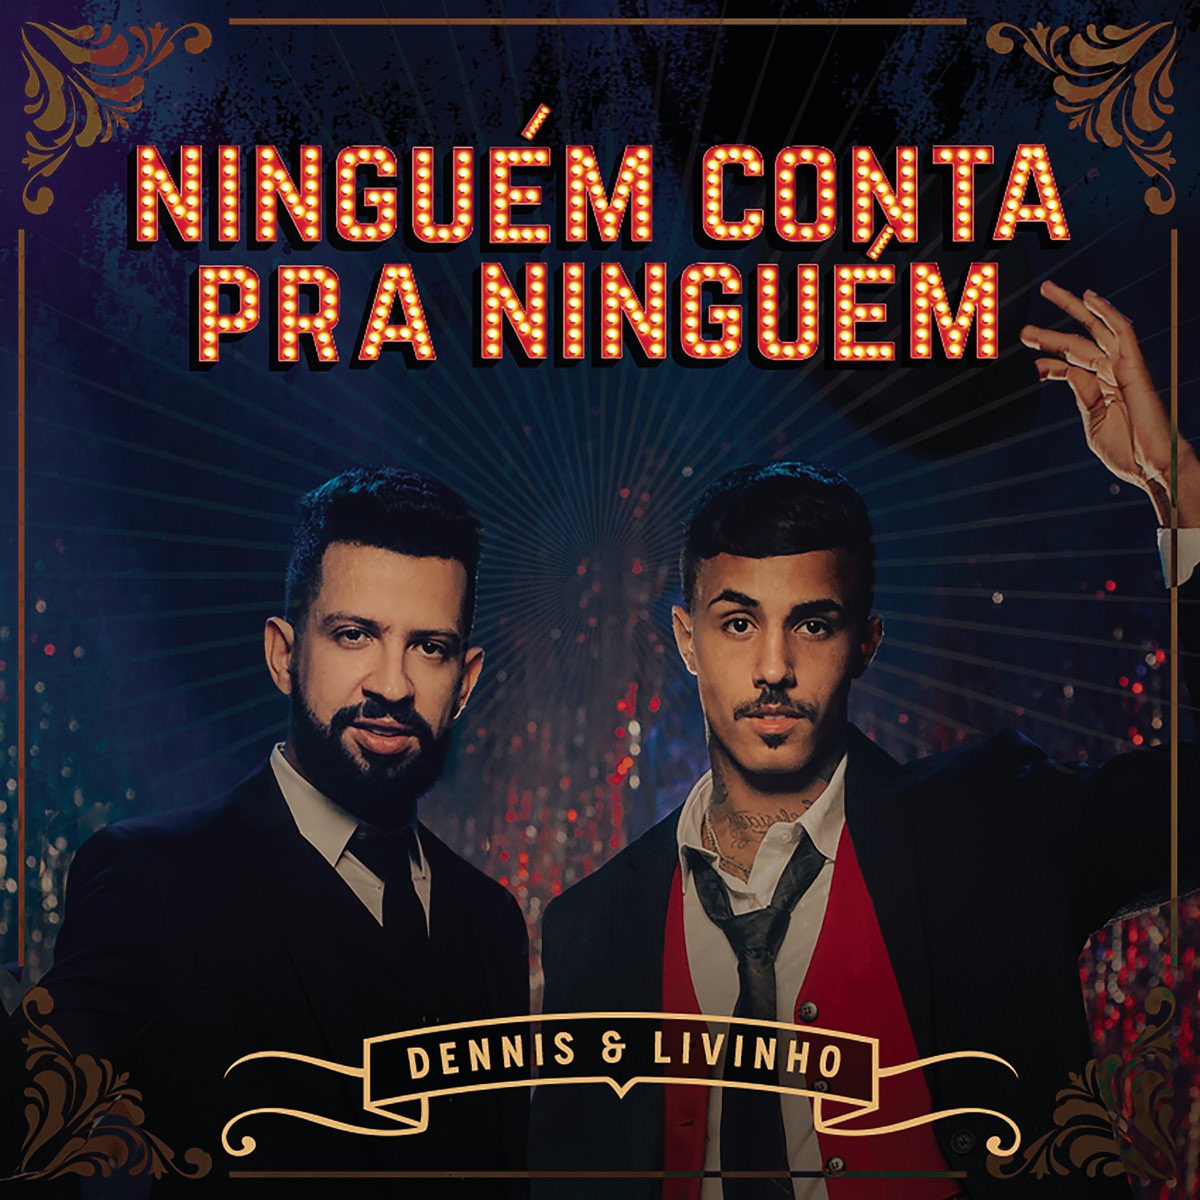 O Que Vem Depois - Album by MC Livinho - Apple Music